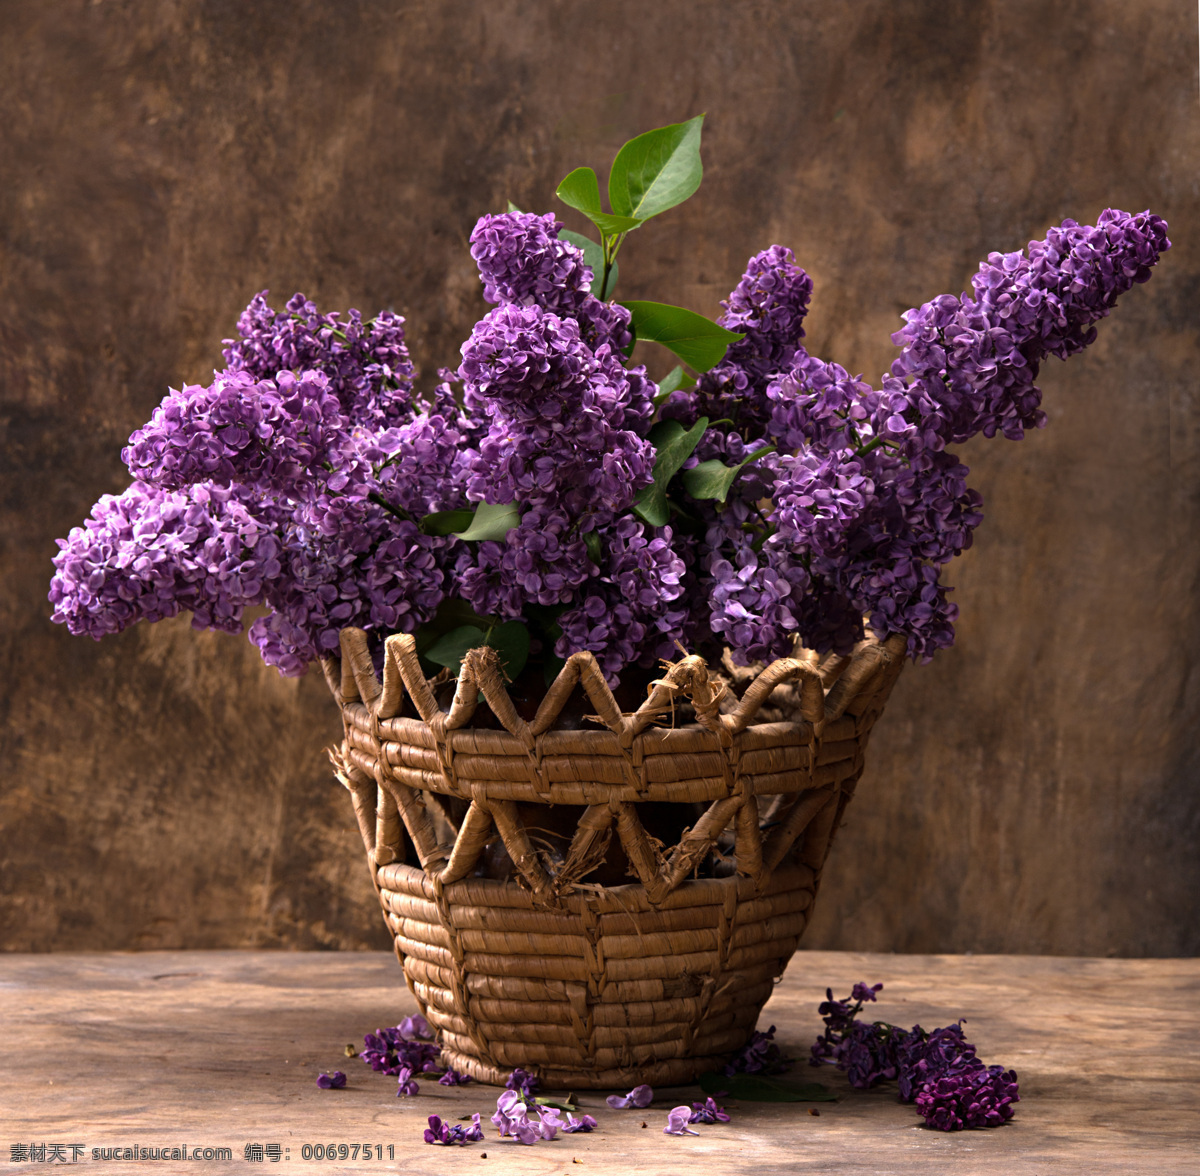 娇美 紫色 花卉 盆景 花卉背景 紫色鲜花 含苞待放 绽放 盛开 植物 花卉素材 花草树木 生物世界